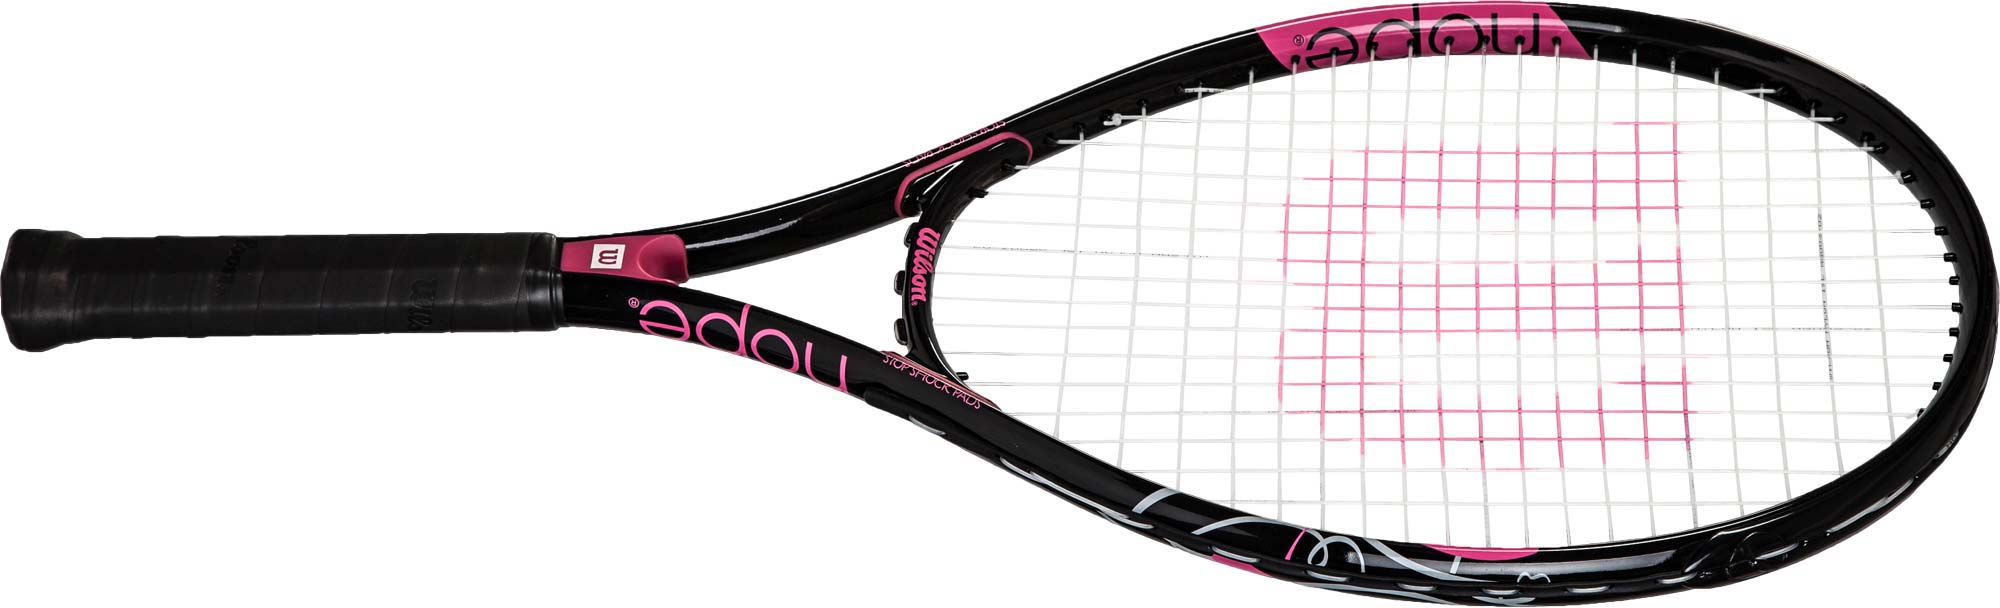 Women's tennis racquet